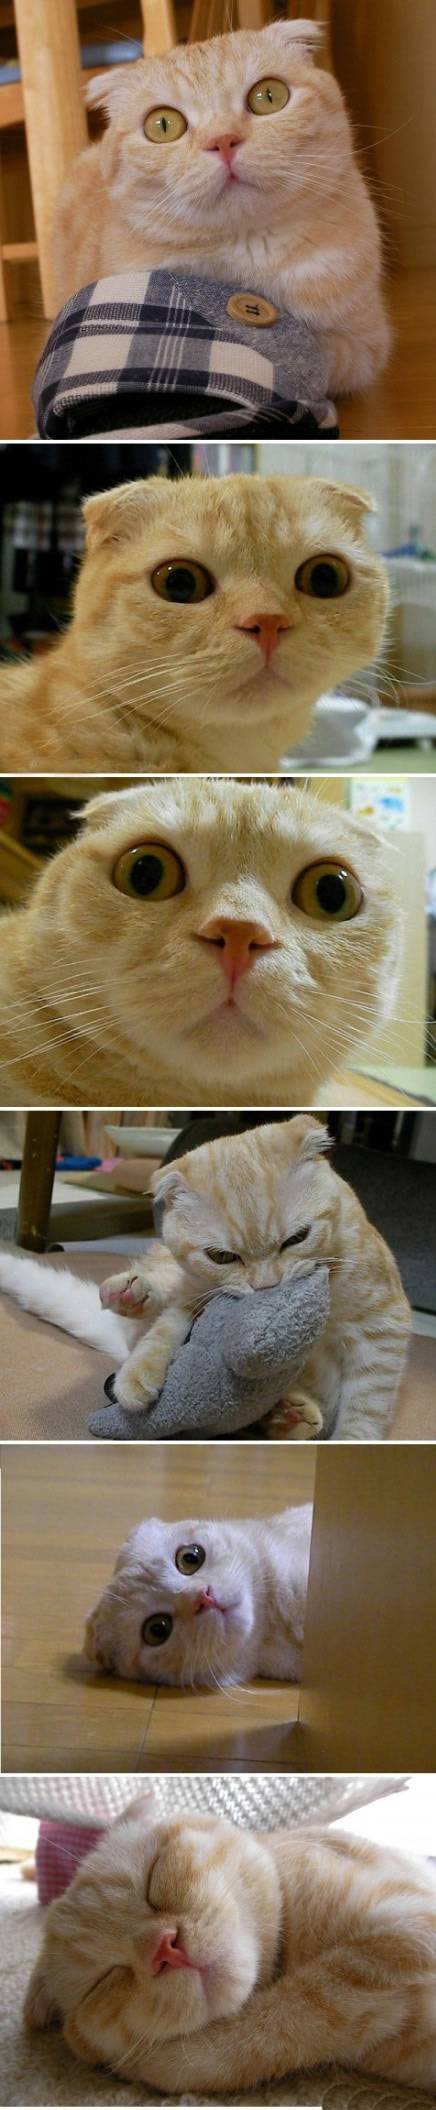 恶搞猫咪表情图片十分逗趣